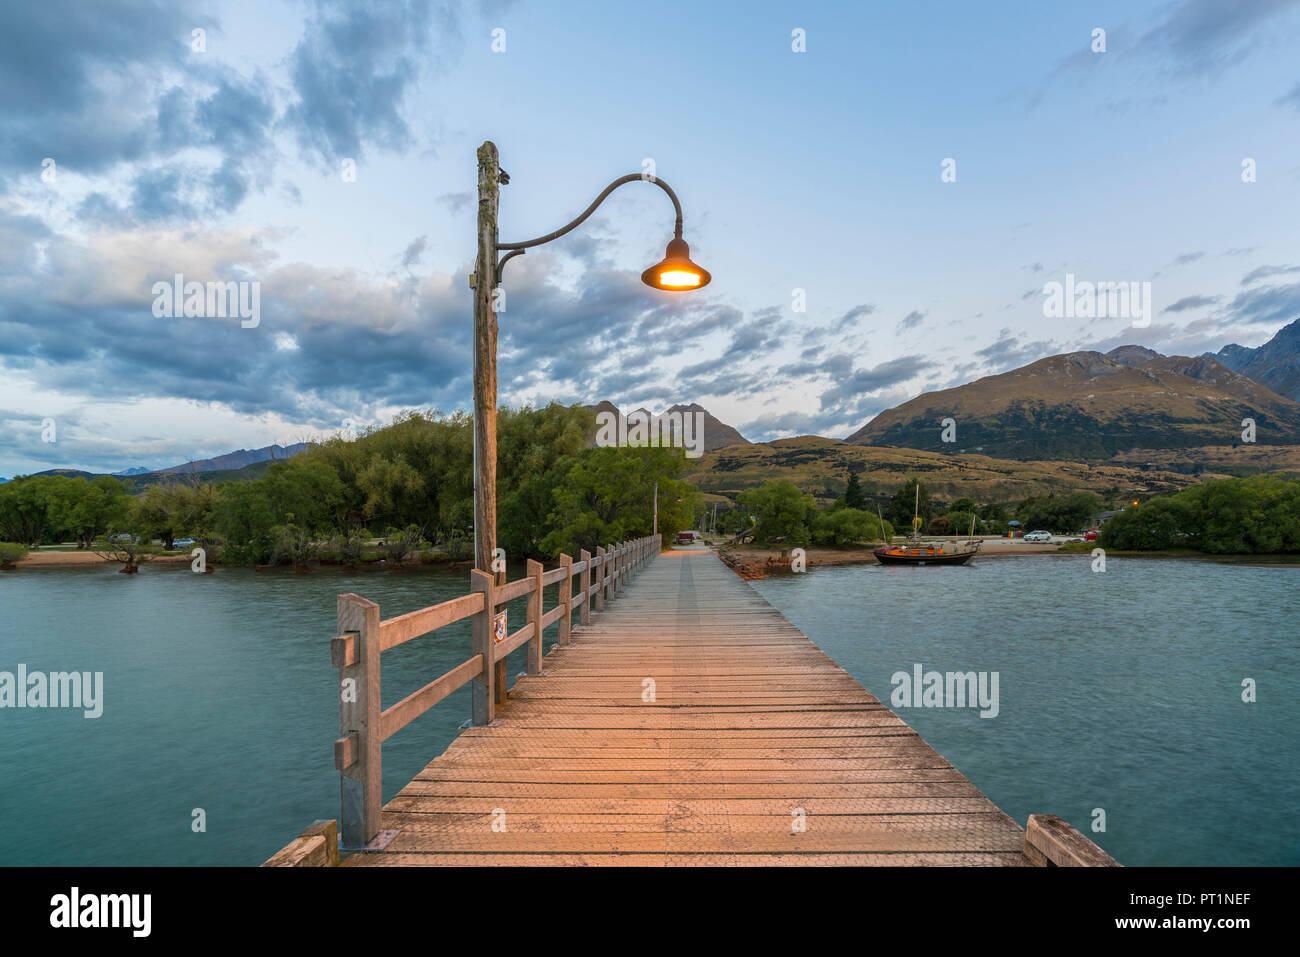 Der Steg mit Lamp Post in der Dämmerung, Glenorchy, Queenstown, Lake District, Region Otago, Südinsel, Neuseeland, Stockfoto